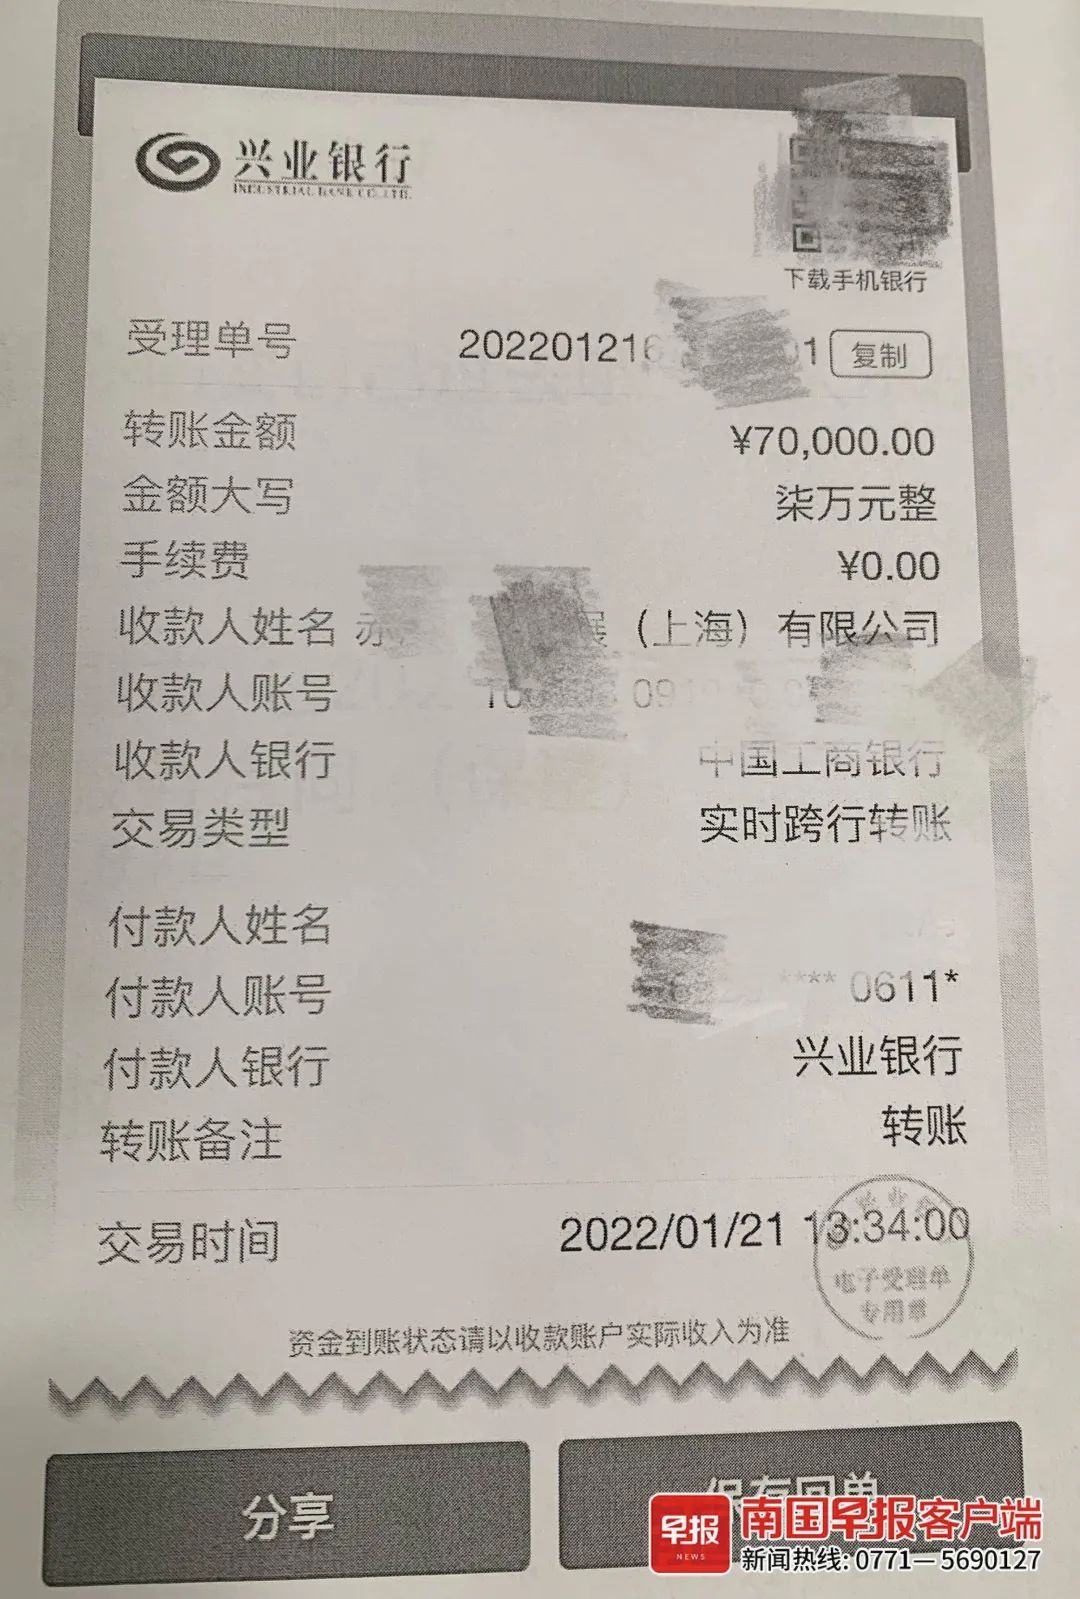 签订直播服务合同后，南宁某商贸公司支付了7万元预付款。